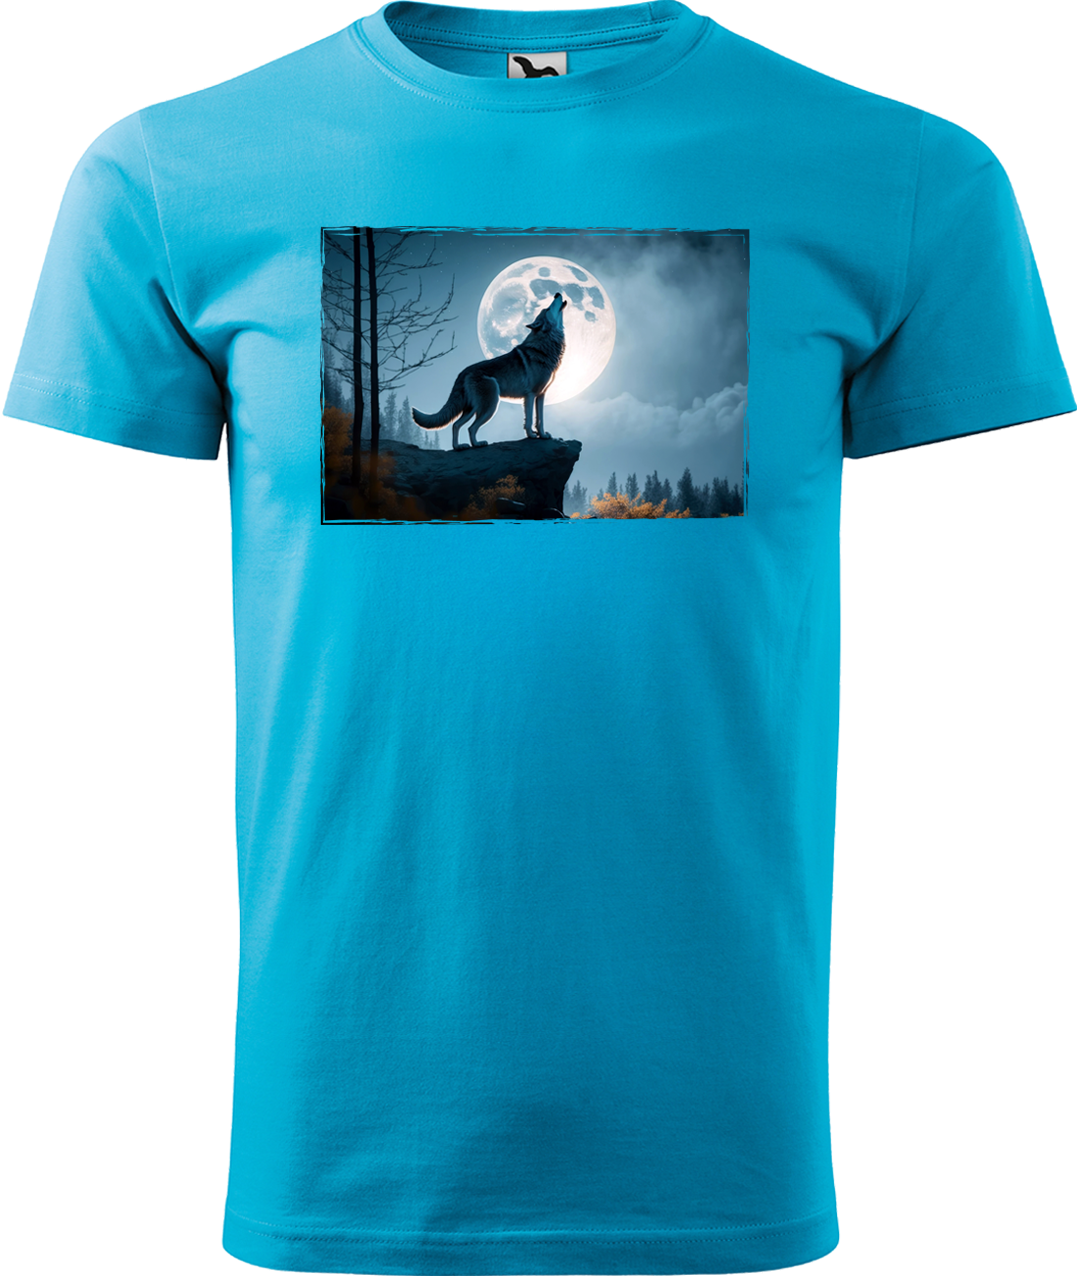 Pánské tričko s vlkem - Vyjící vlk Velikost: XL, Barva: Tyrkysová (44)